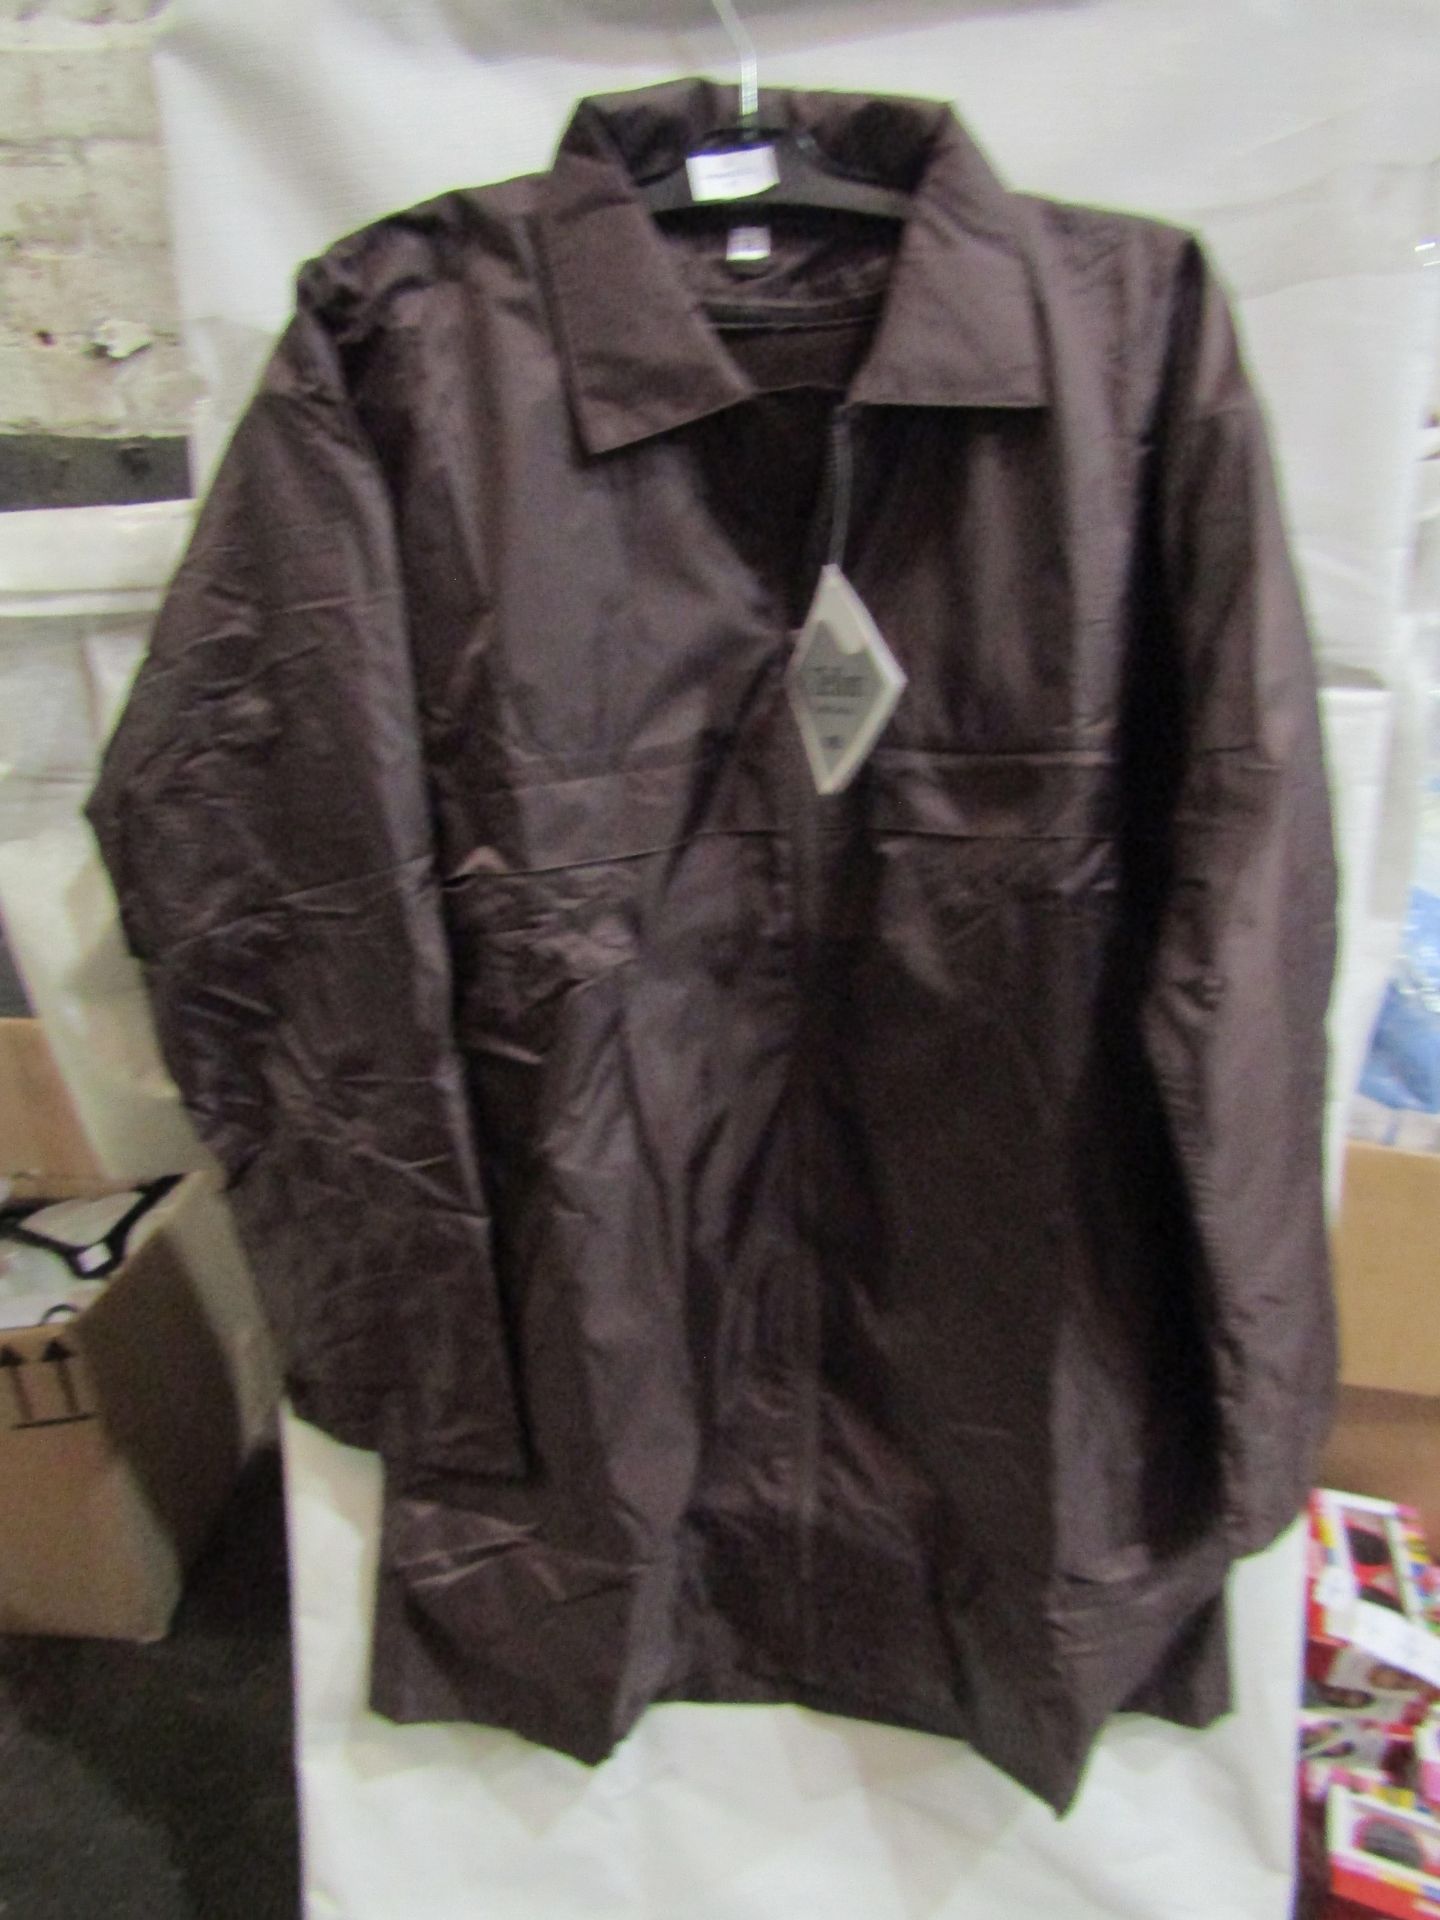 Rainmac Childrens Brown Rain Coat, Size: 2 - Unused & Packaged.